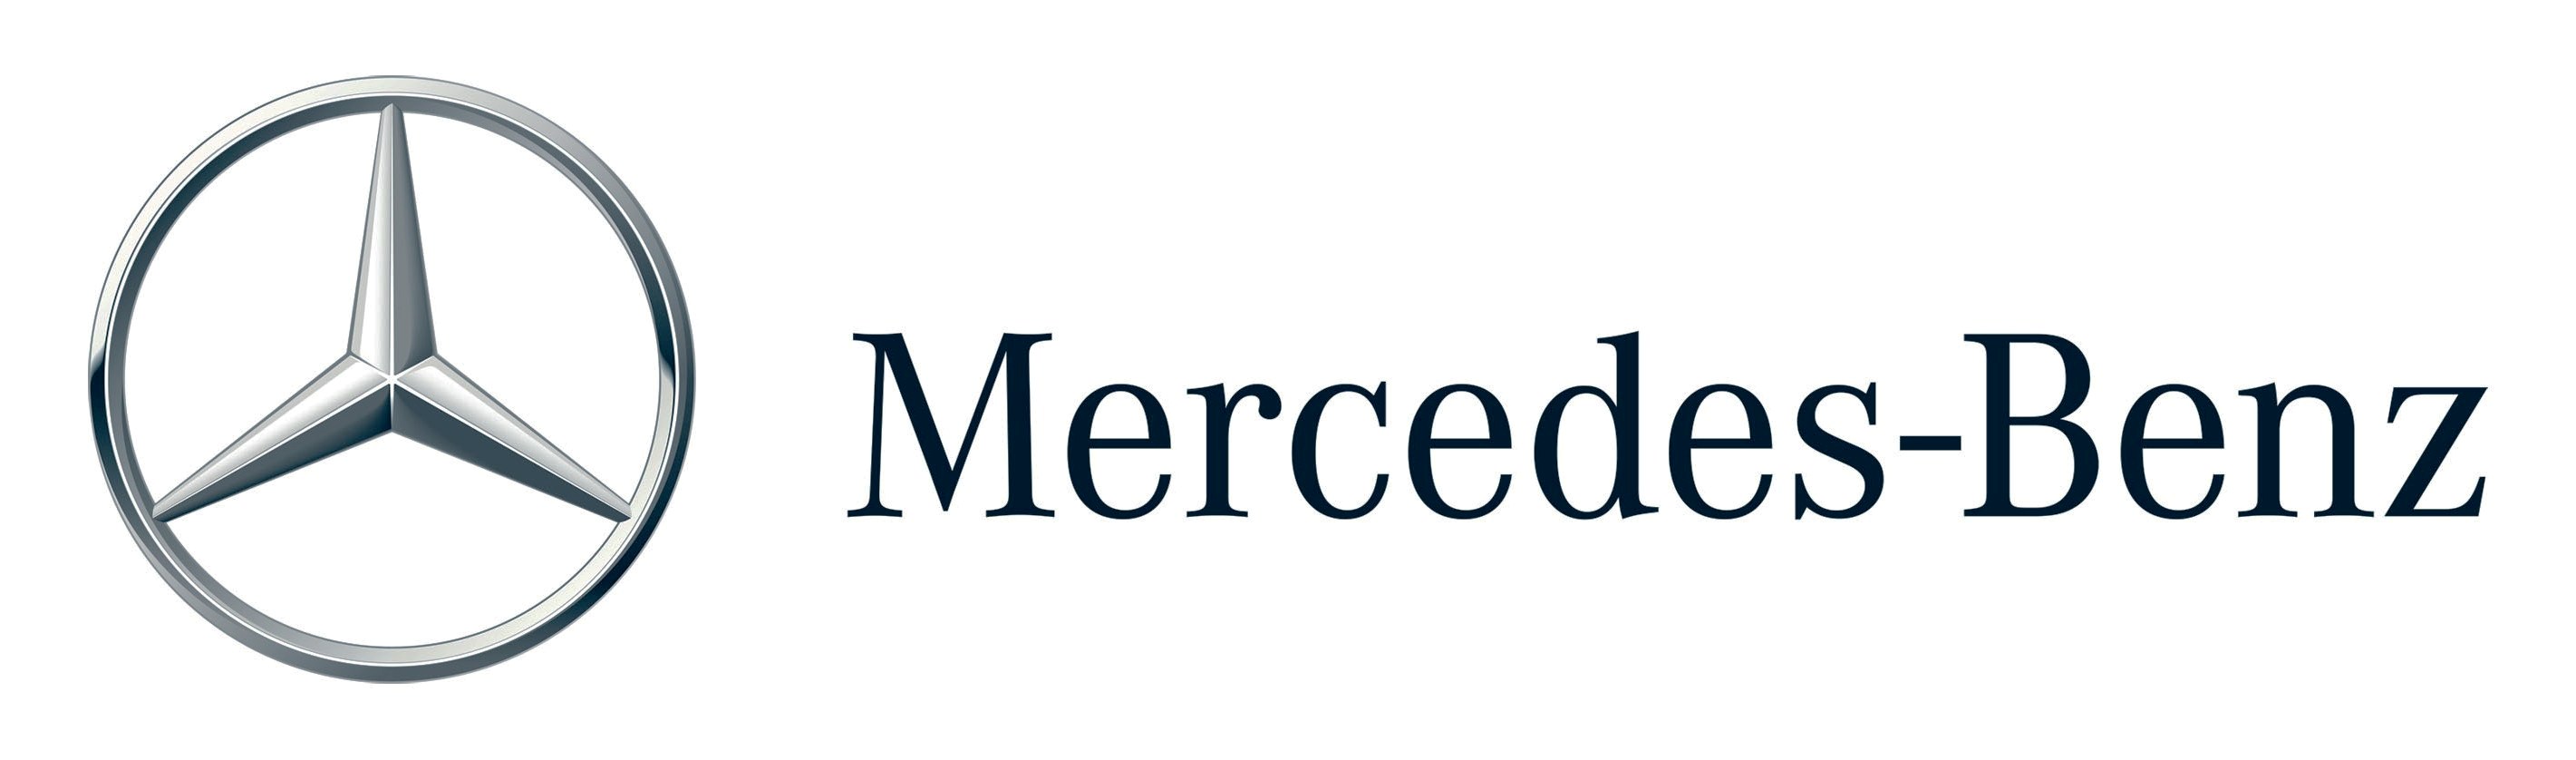 Mercedes Benz Logo Wallpaper Incandescent Bio